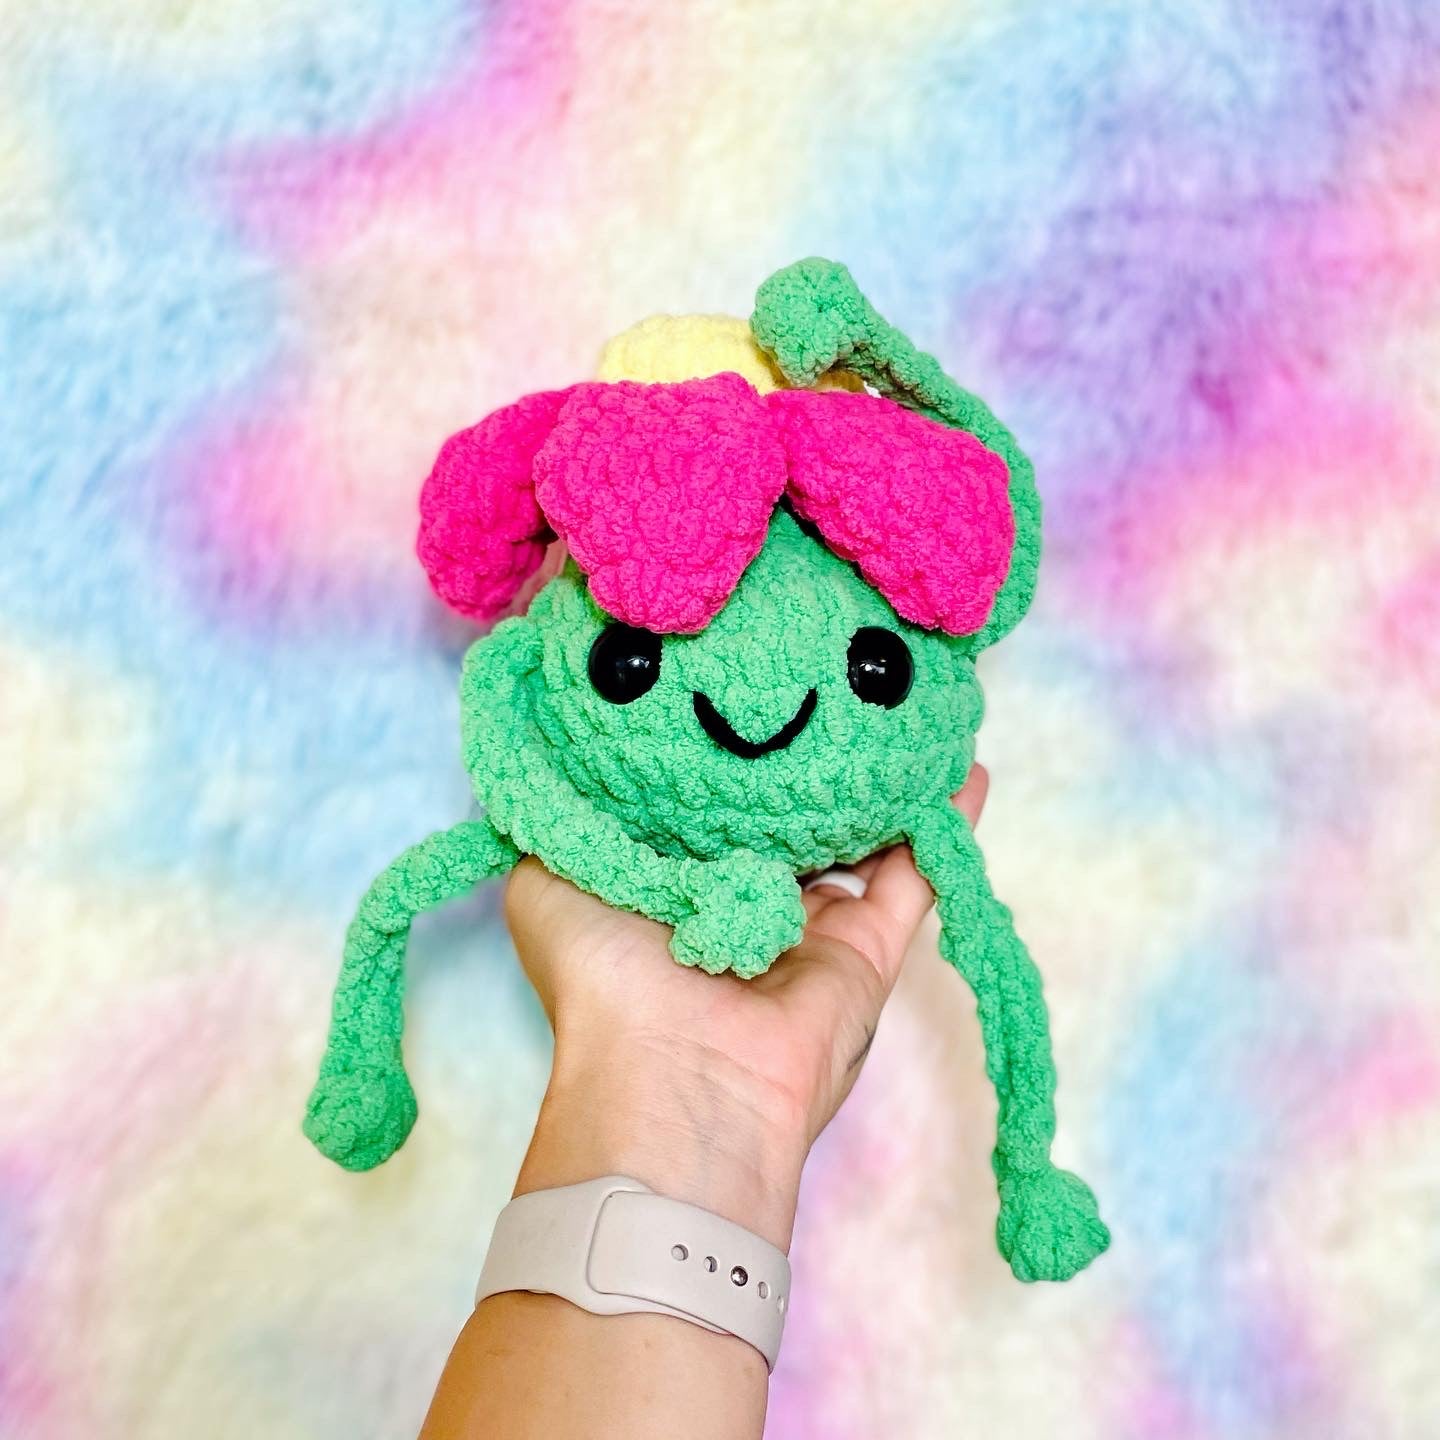 lanky crochet flower guy